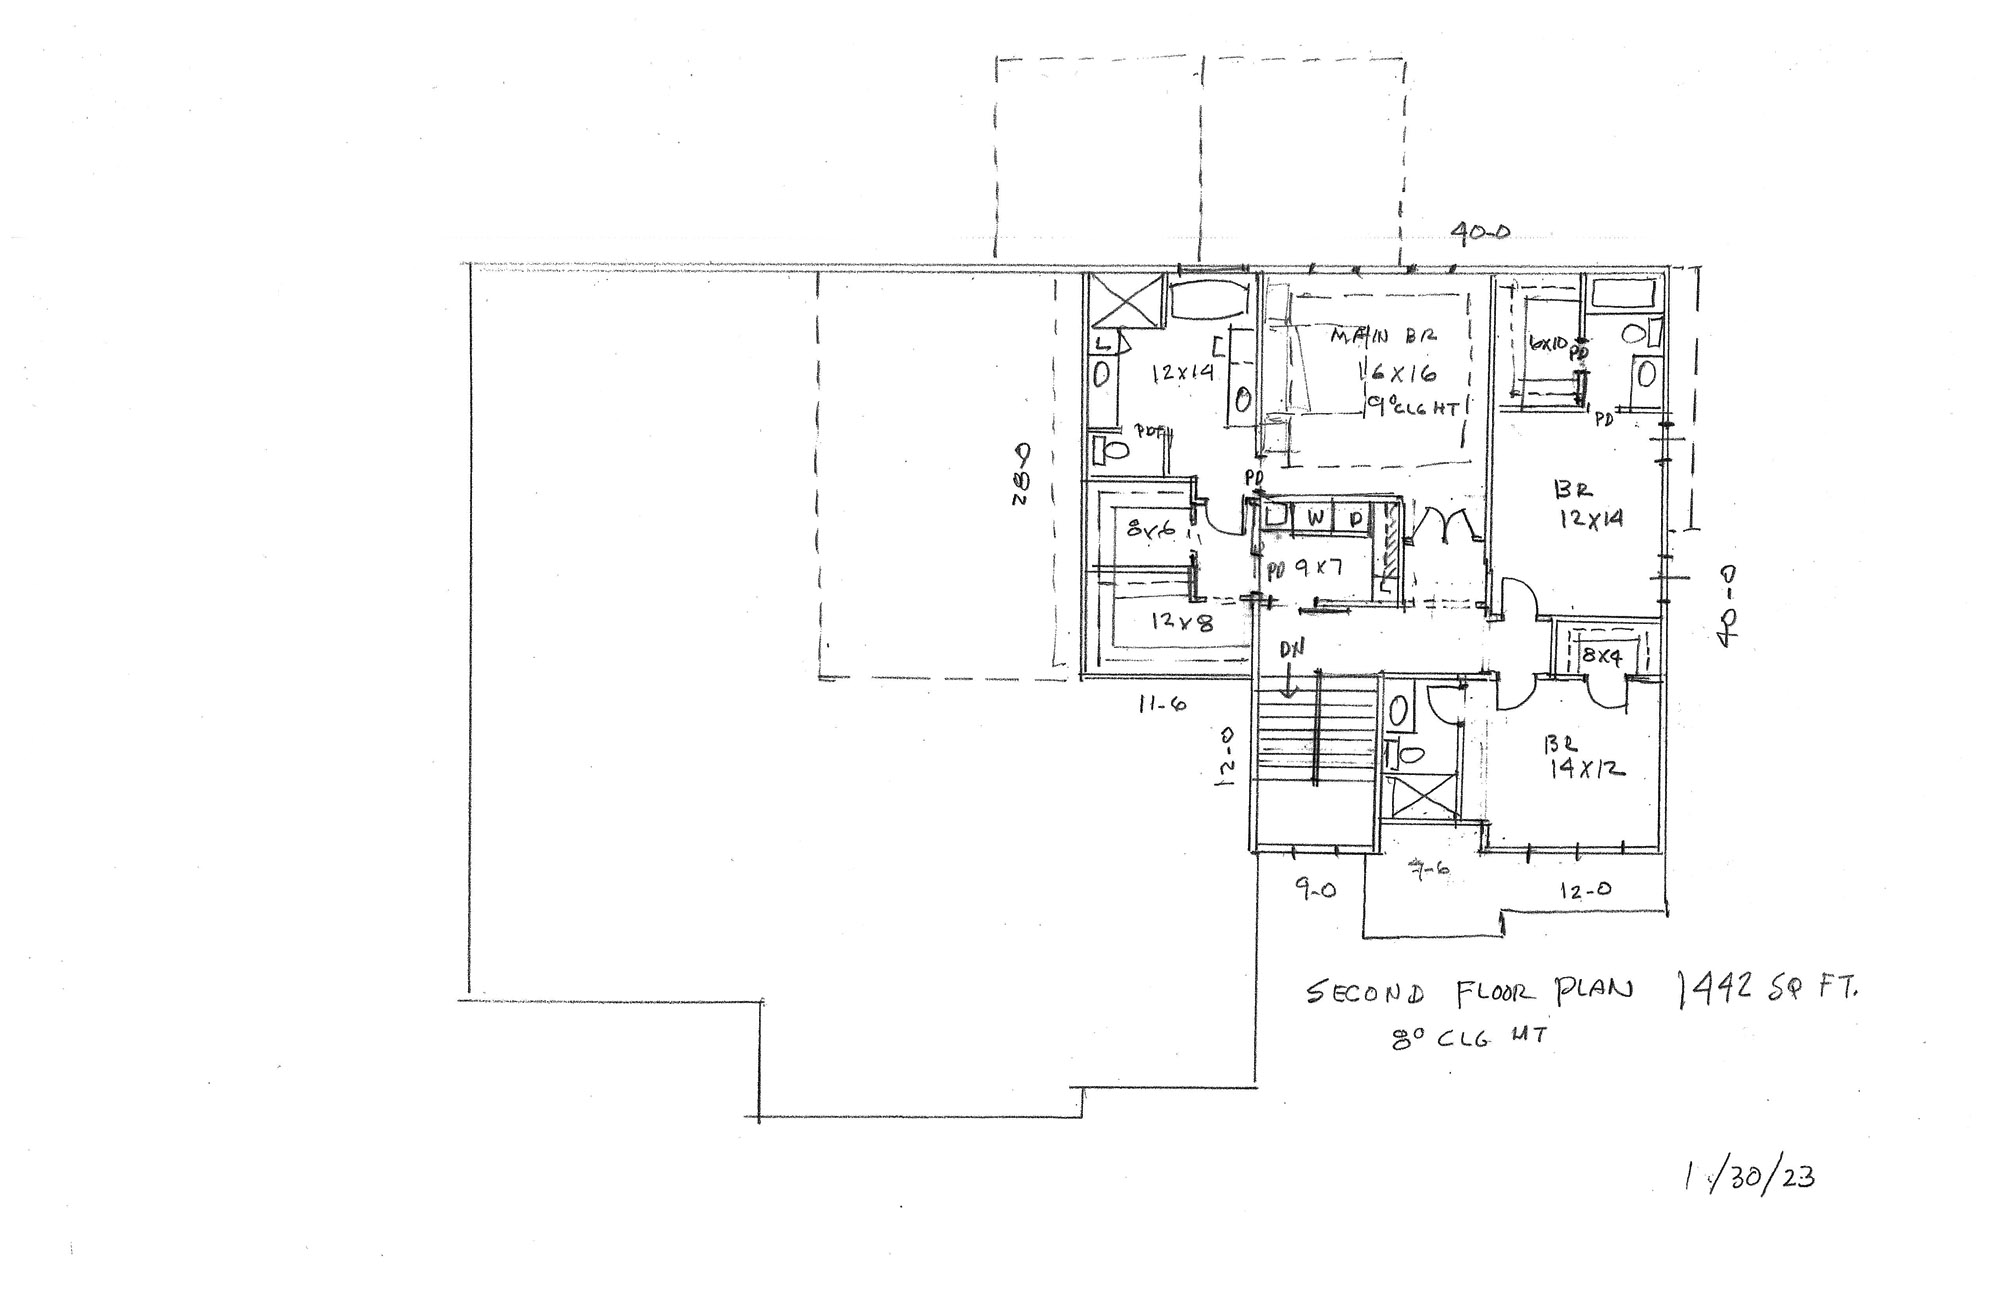 Michelle RV Garage Home Plan Second Floor Plan